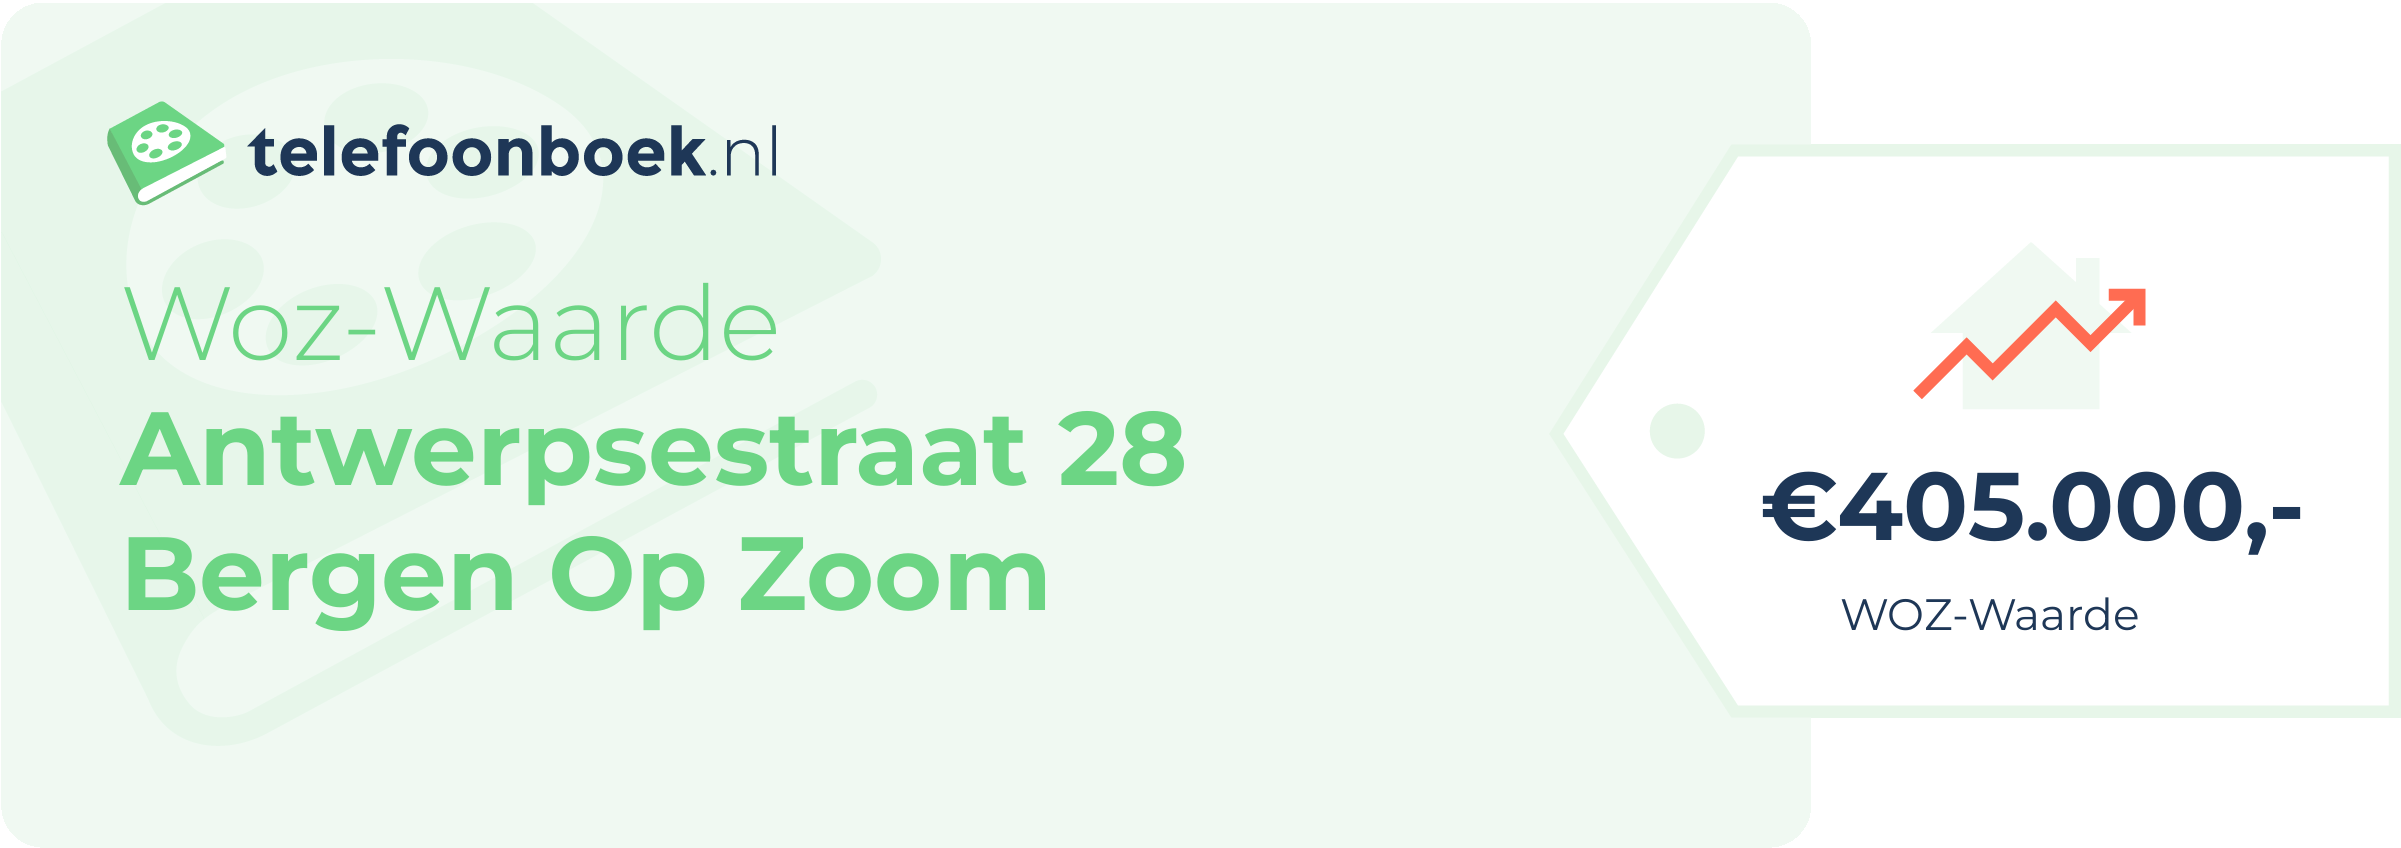 WOZ-waarde Antwerpsestraat 28 Bergen Op Zoom